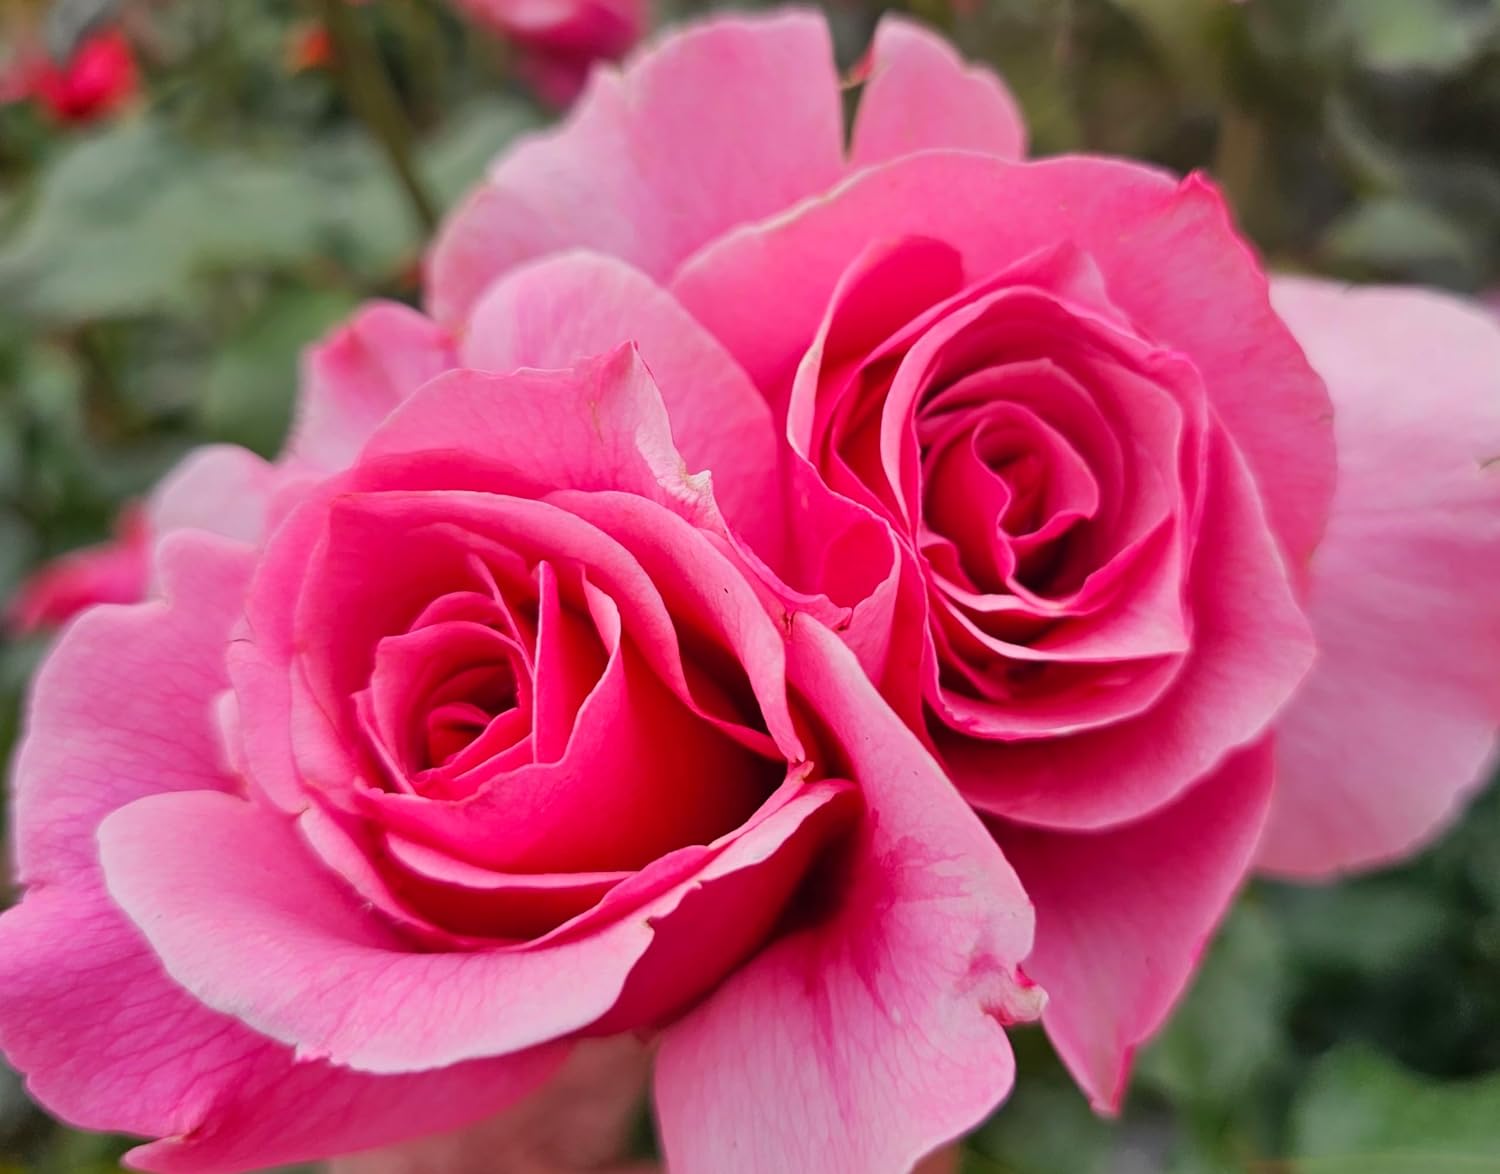 Duet rose